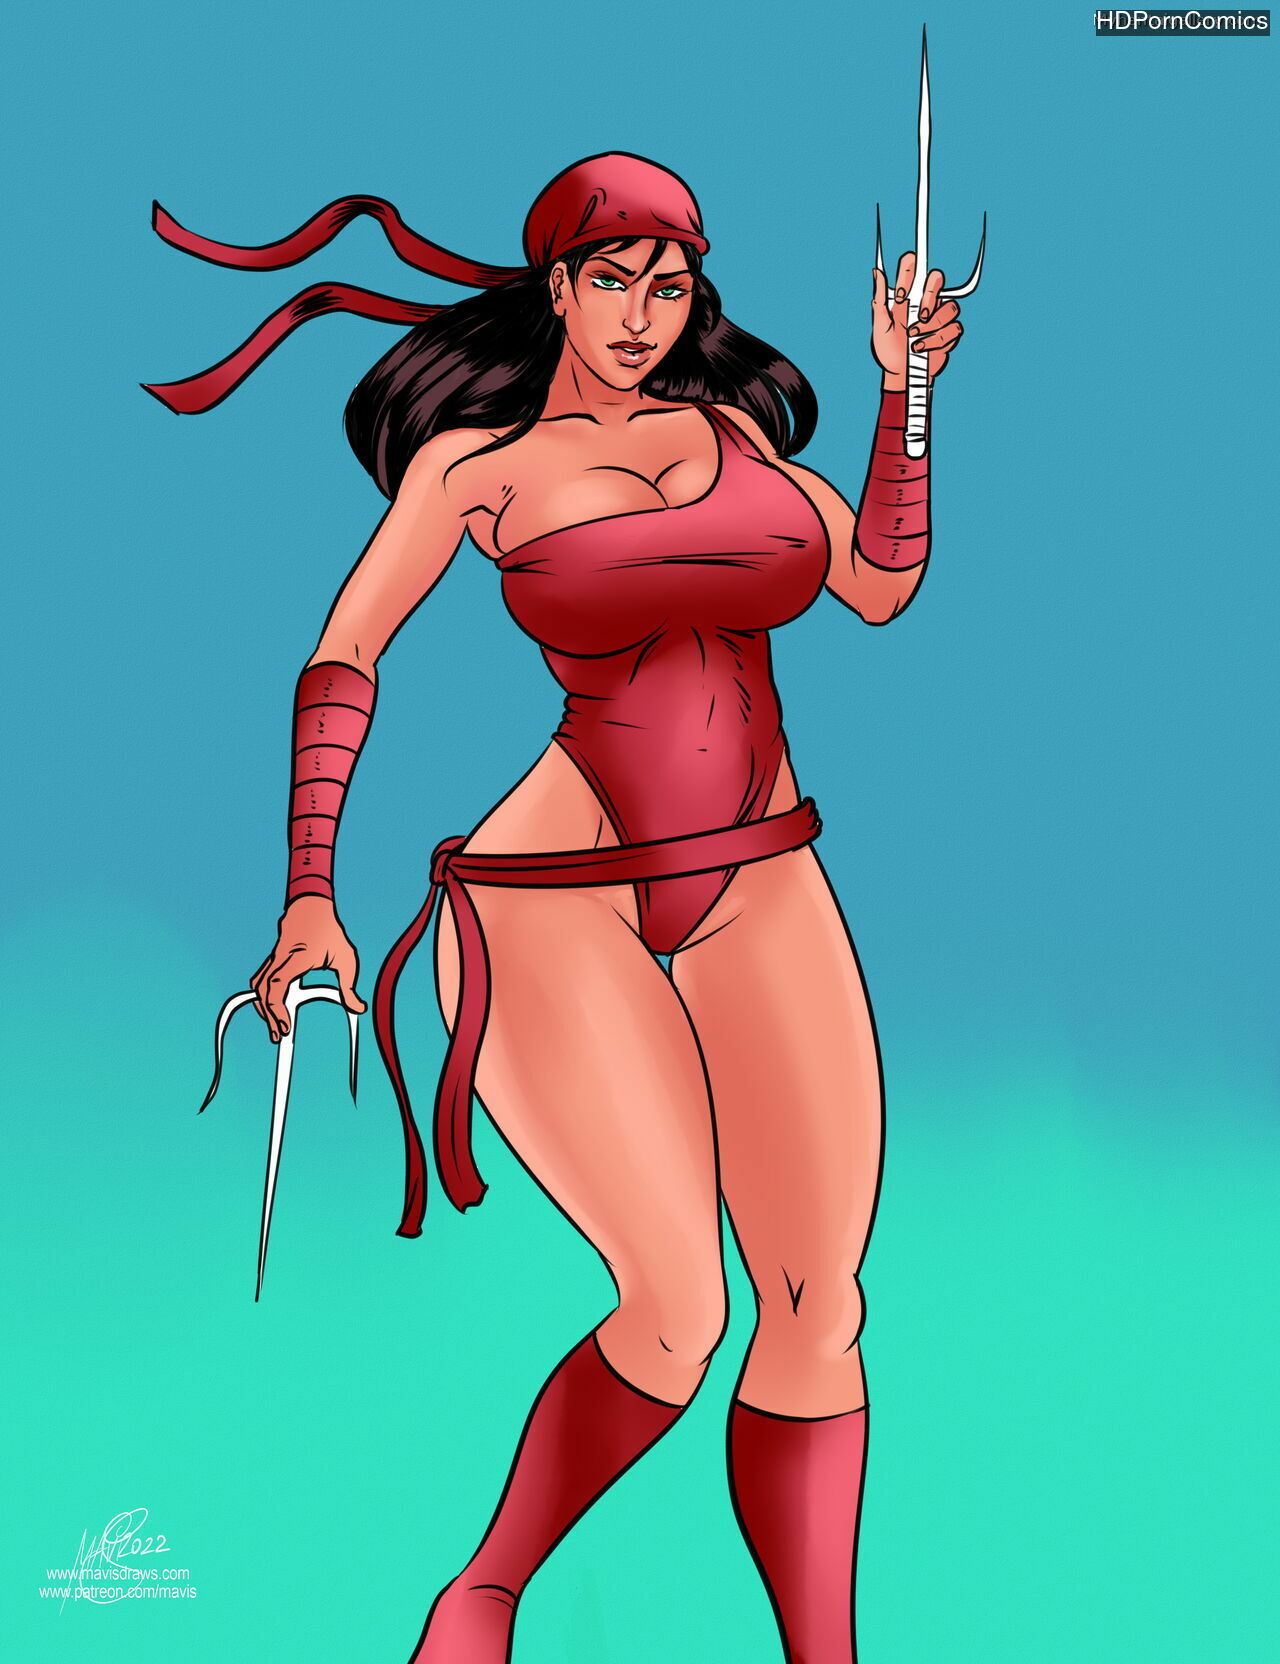 1280px x 1664px - Battle Of Supes - Elektra vs Harley Quinn comic porn - HD Porn Comics